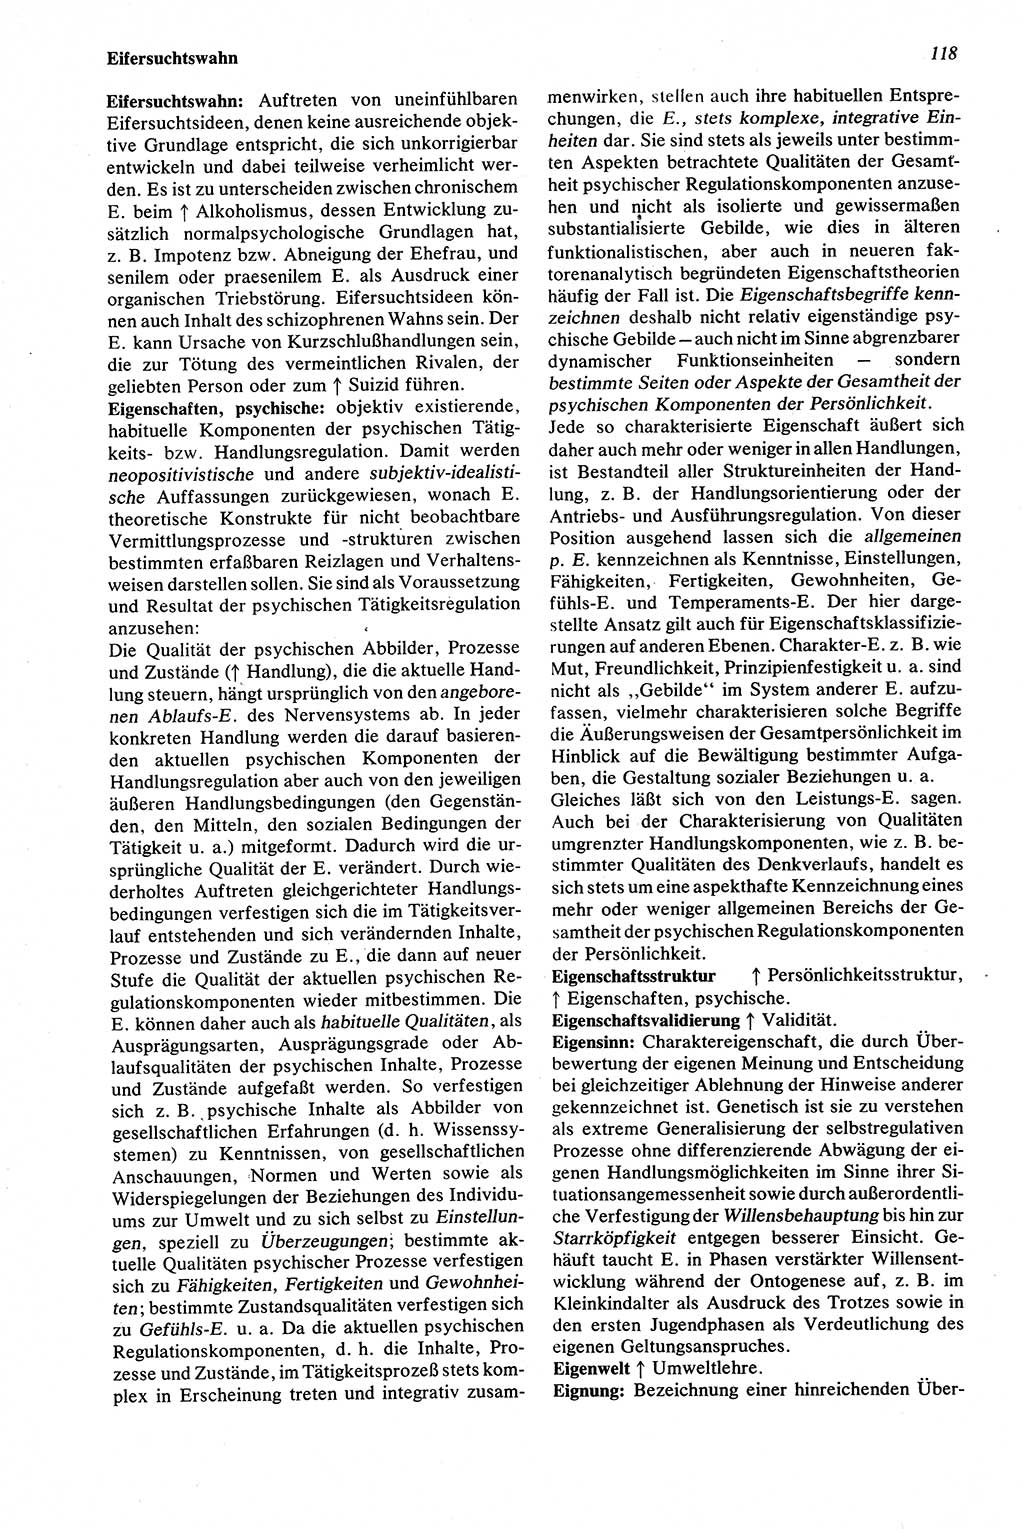 Wörterbuch der Psychologie [Deutsche Demokratische Republik (DDR)] 1976, Seite 118 (Wb. Psych. DDR 1976, S. 118)